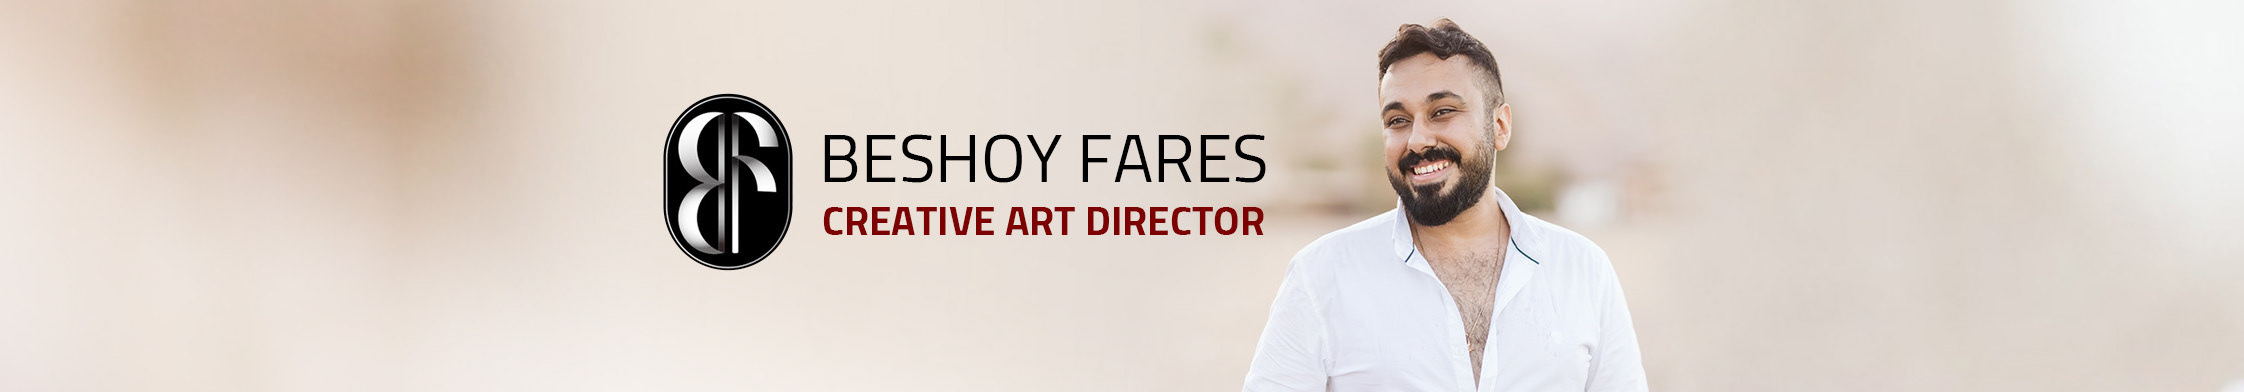 Banner de perfil de Beshoy Fares